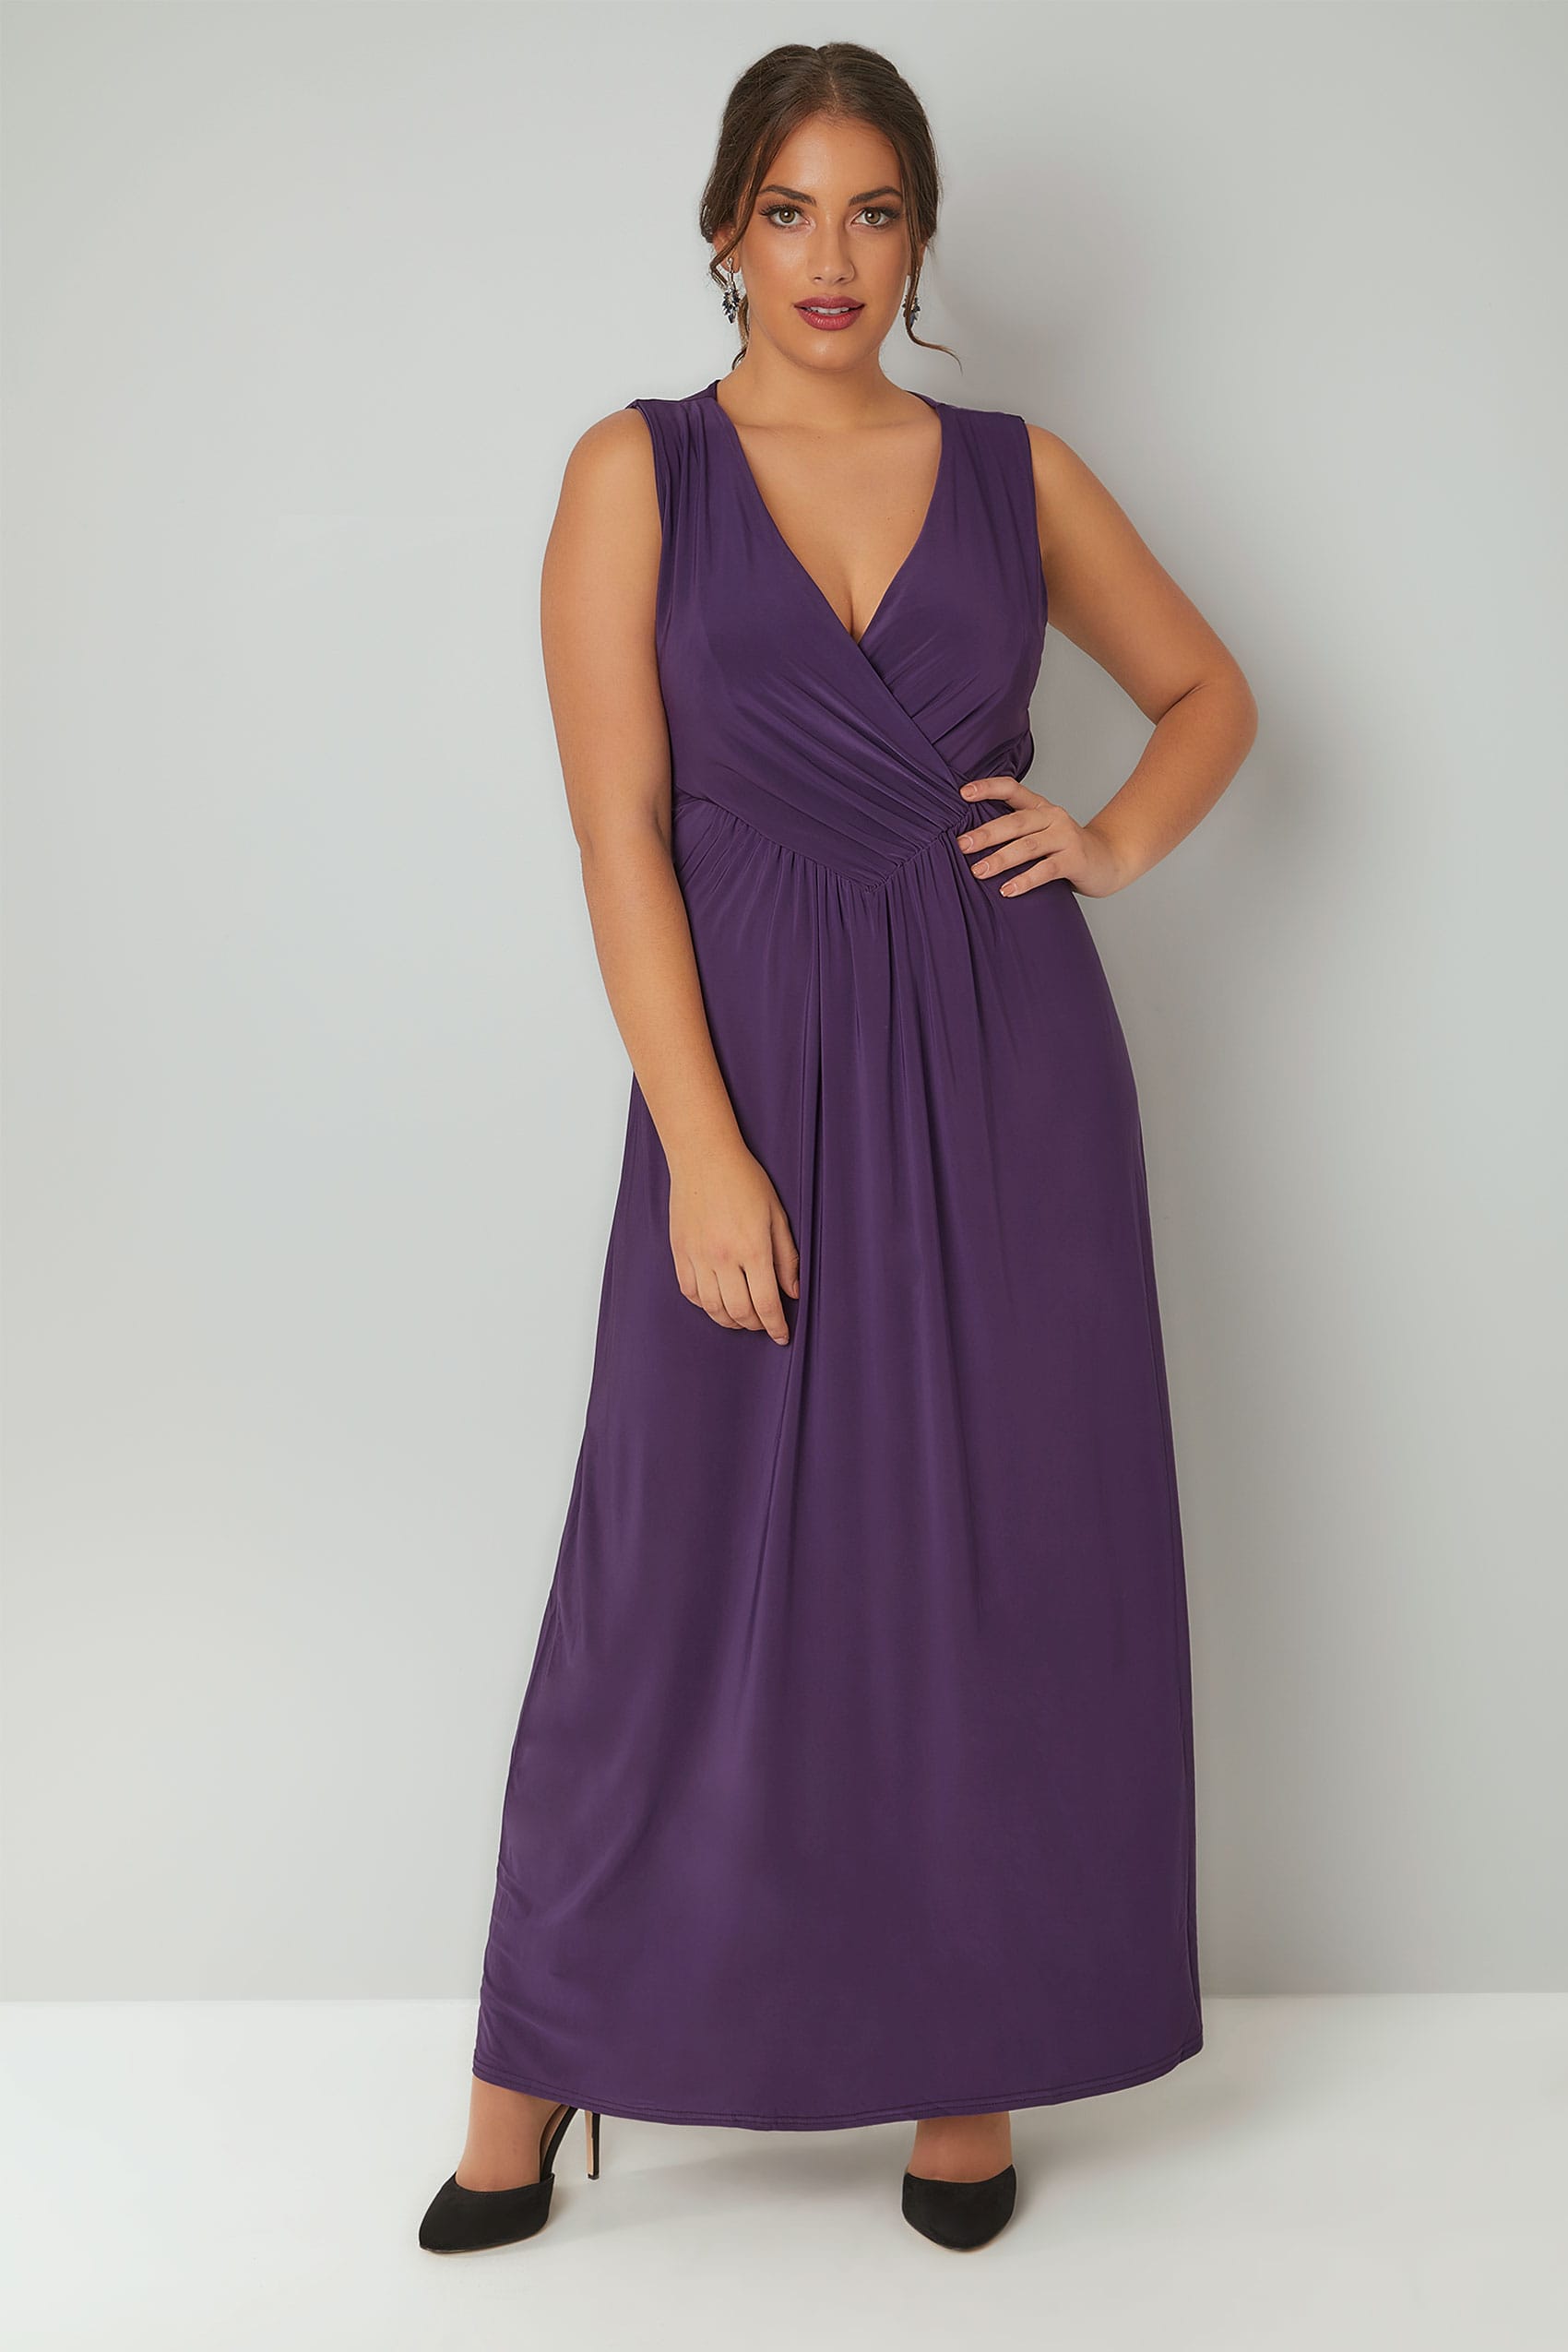 PRASLIN Purple Slinky Wrap Front Maxi Dress, Plus size 16 to 26